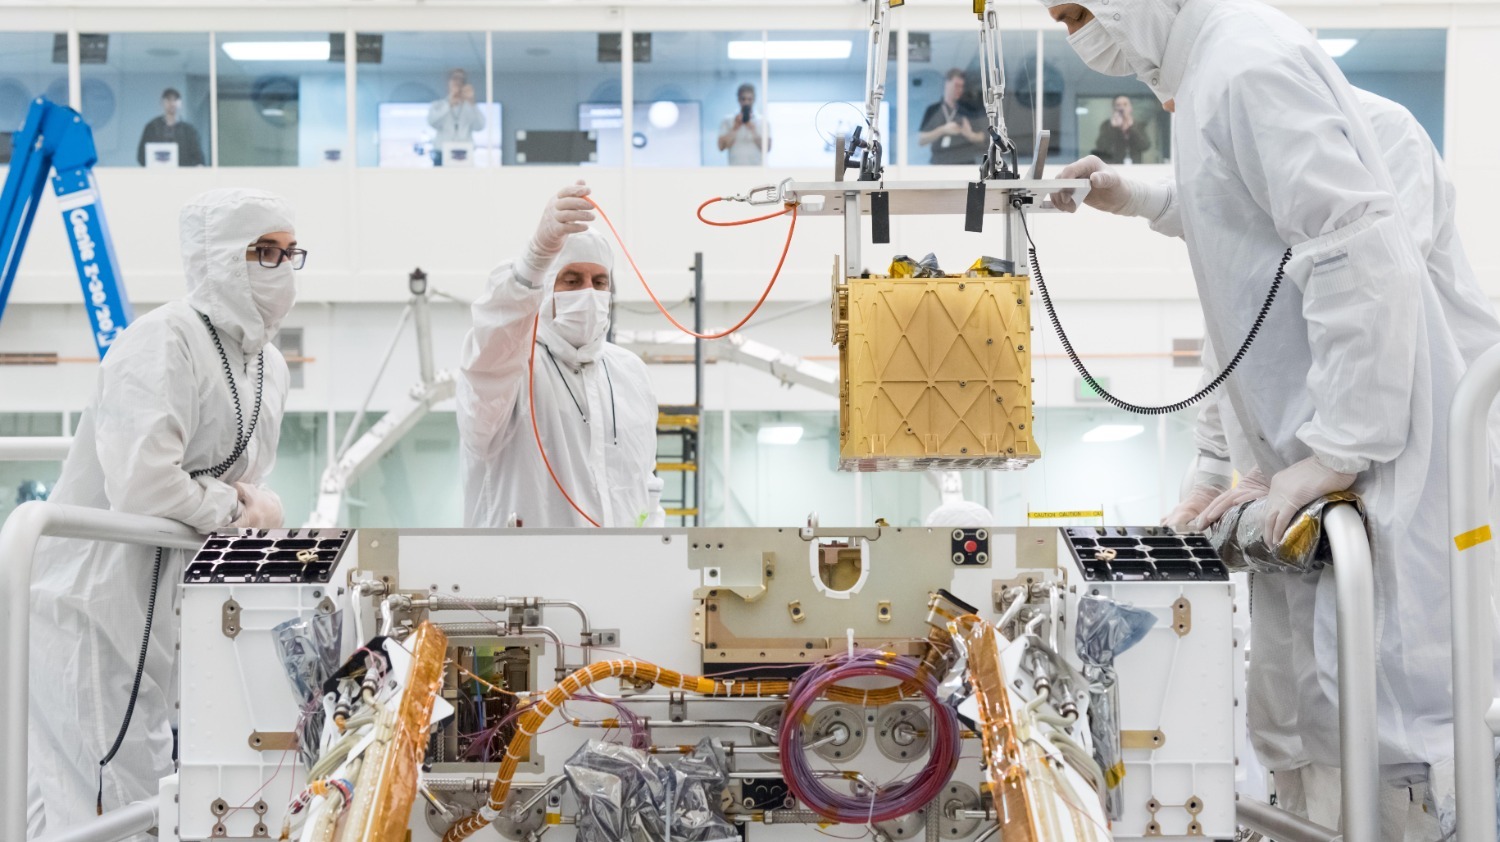 MOXIE опускается в шасси космического корабля Perseverance в 2019 году. В ходе миссии MOXIE 16 раз извлекал кислород из марсианской атмосферы, тестируя способ, с помощью которого будущие астронавты смогут изготовить ракетное топливо для возвращения на Землю.